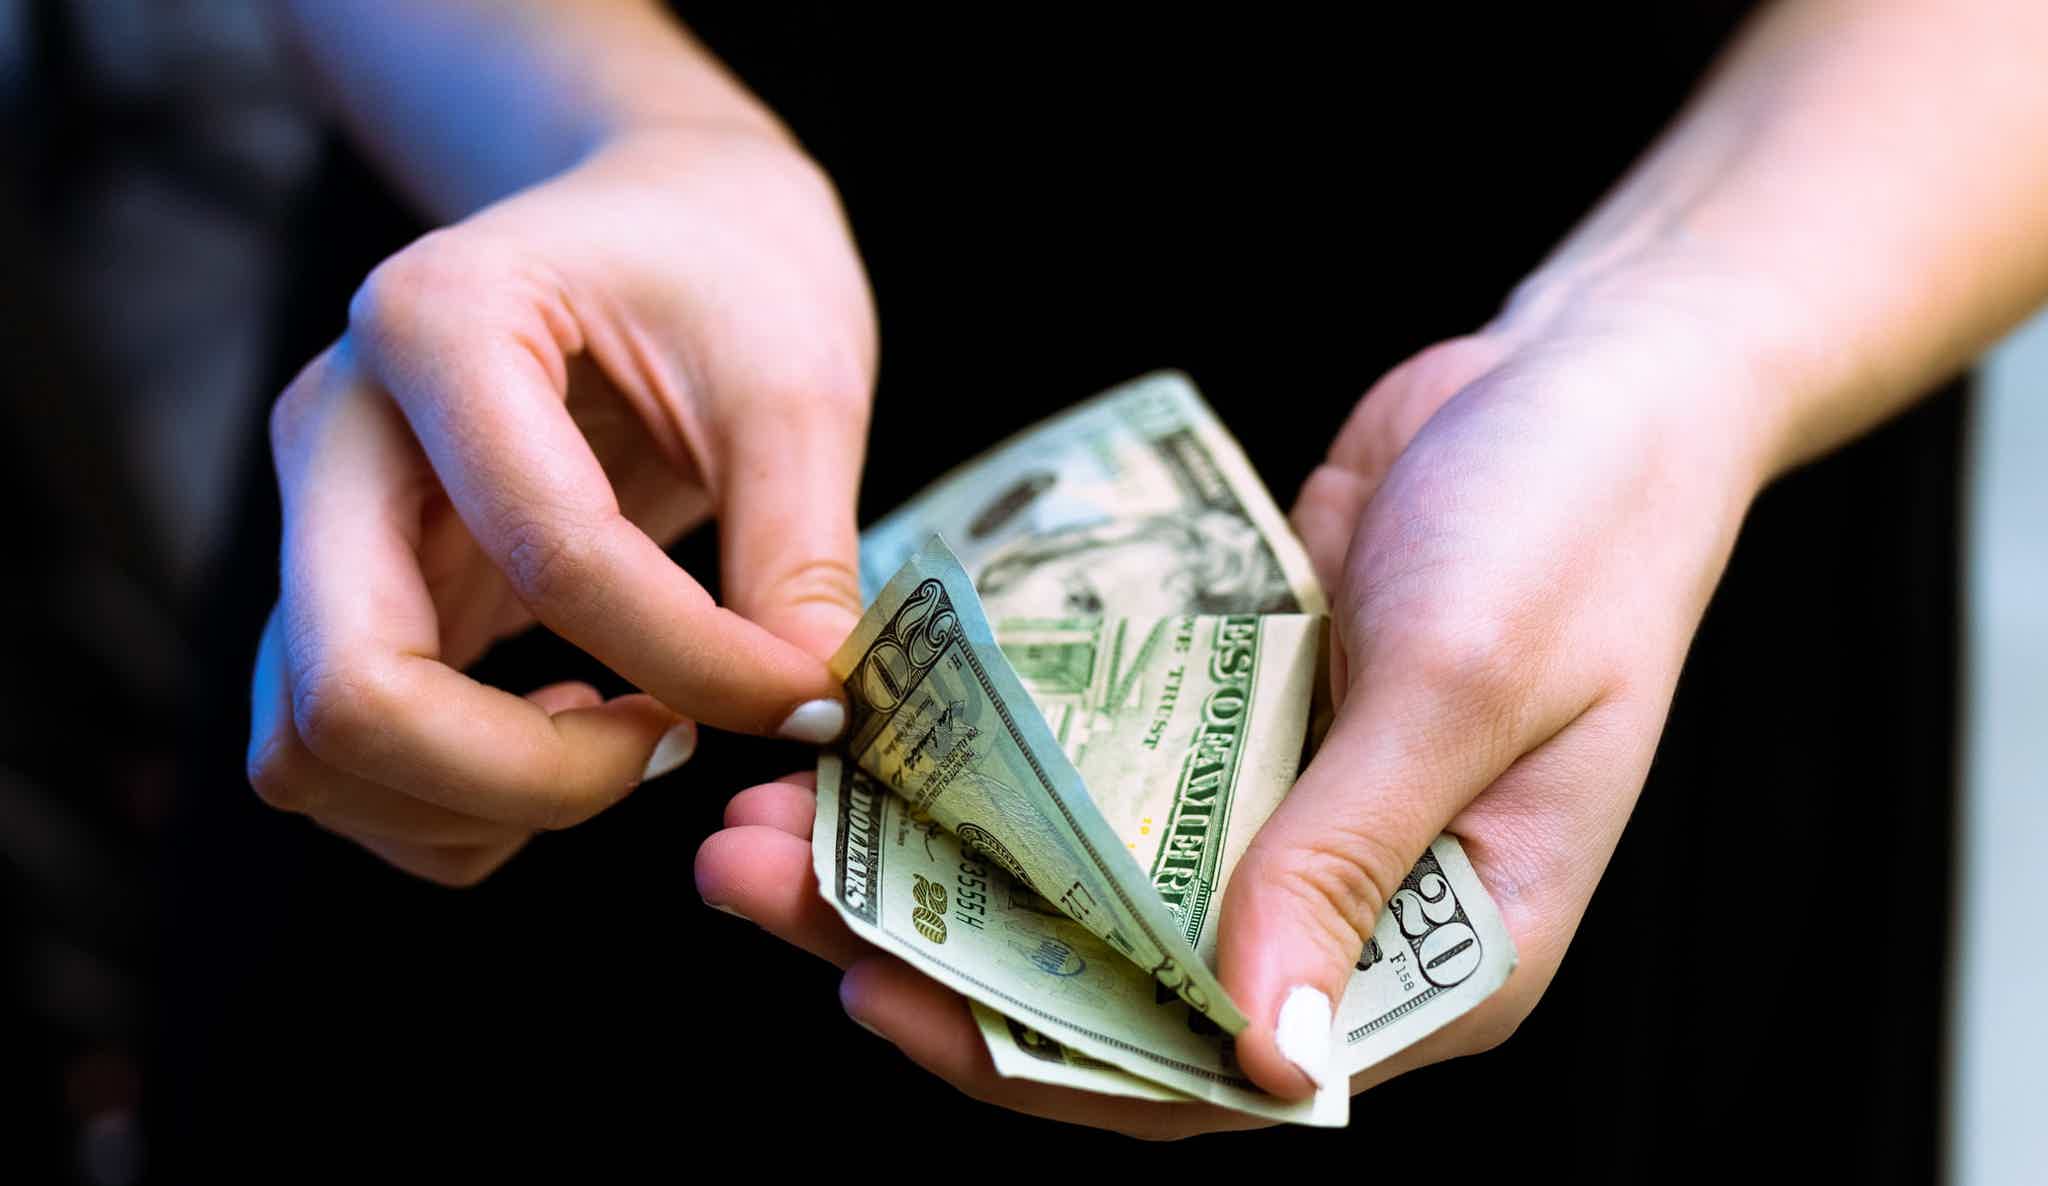 Então, como ganhar cashback pagando boletos? Fonte: Unsplash.